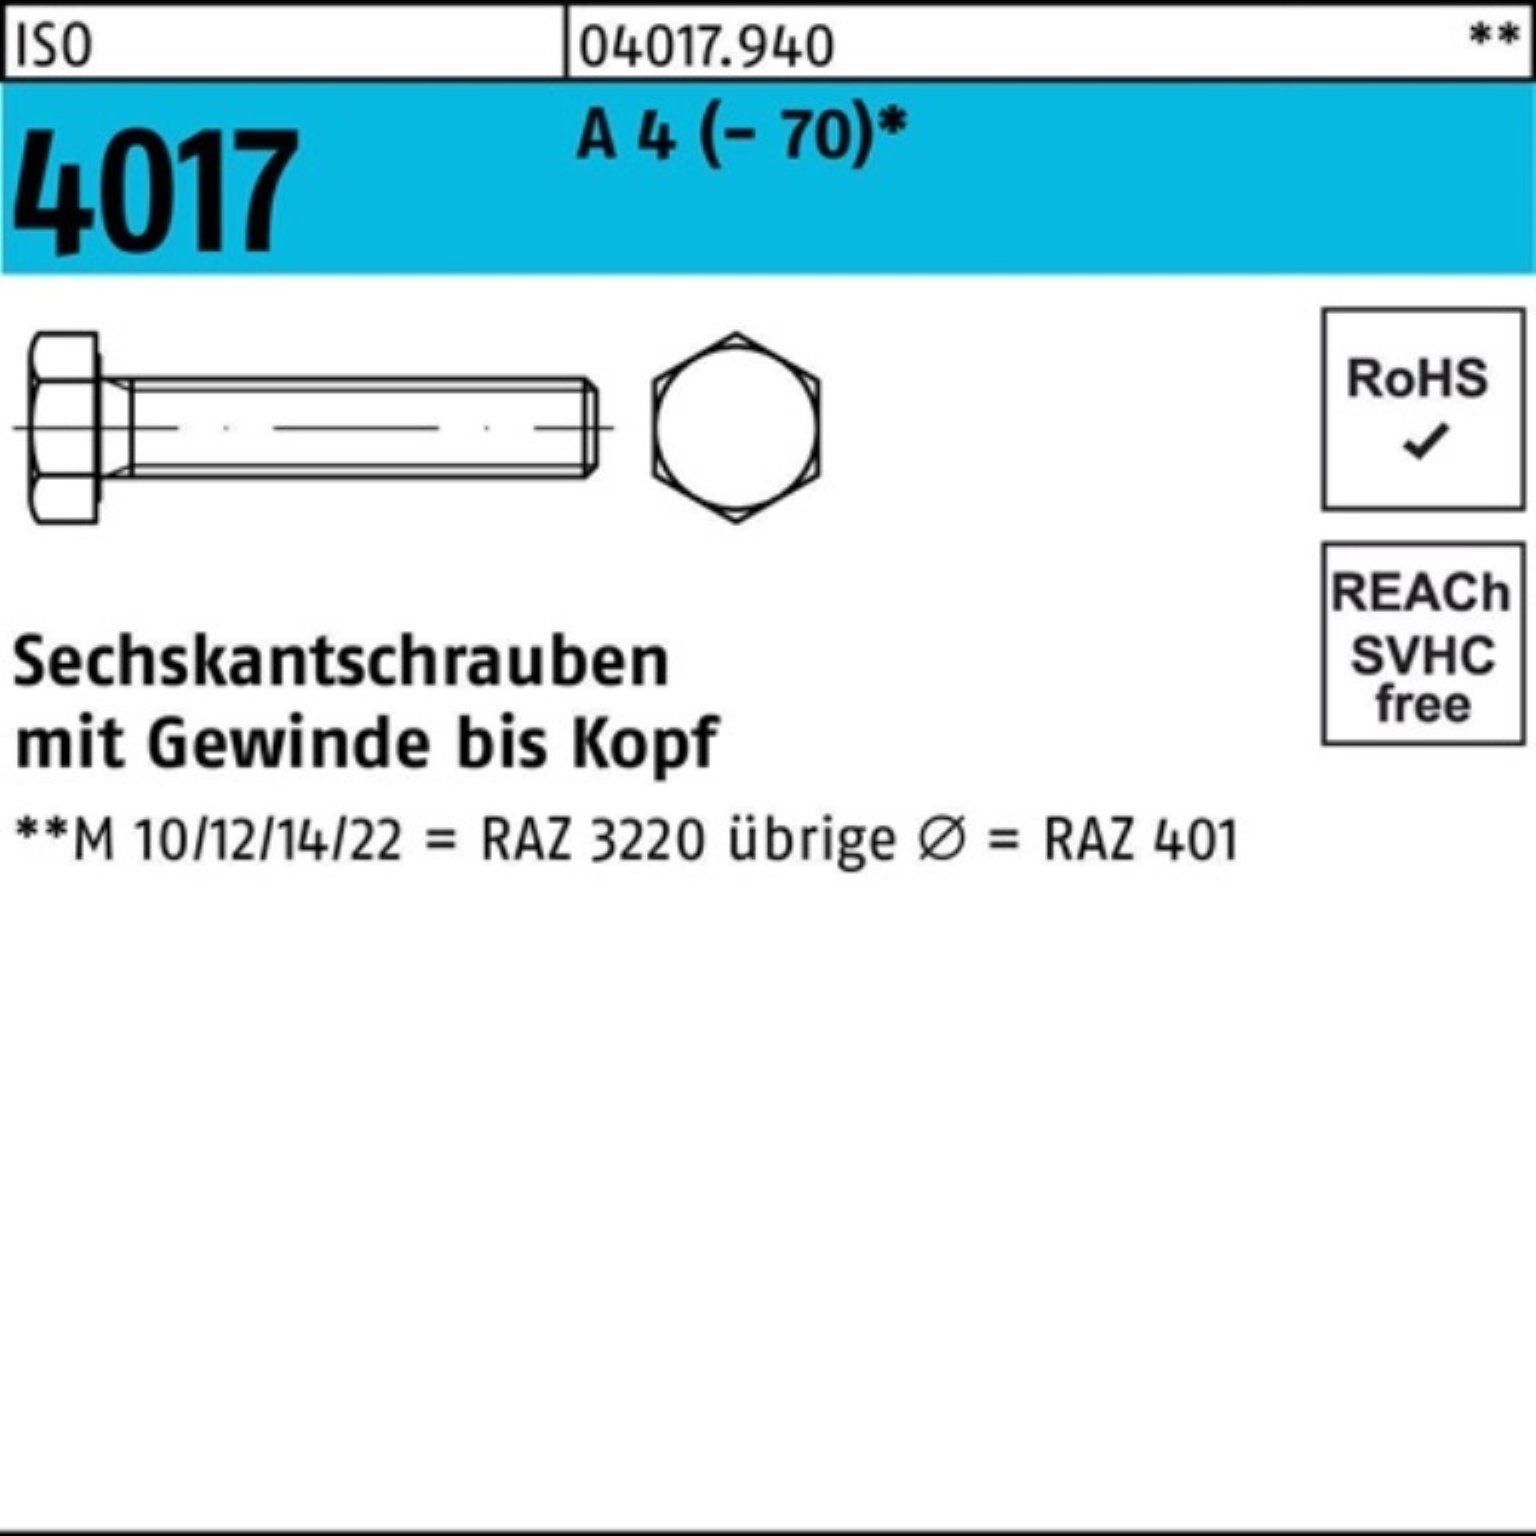 VG Bufab Pack 16 4017 200er ISO Sechskantschraube Stück Sechskantschraube 4 A 200 401 ISO M4x